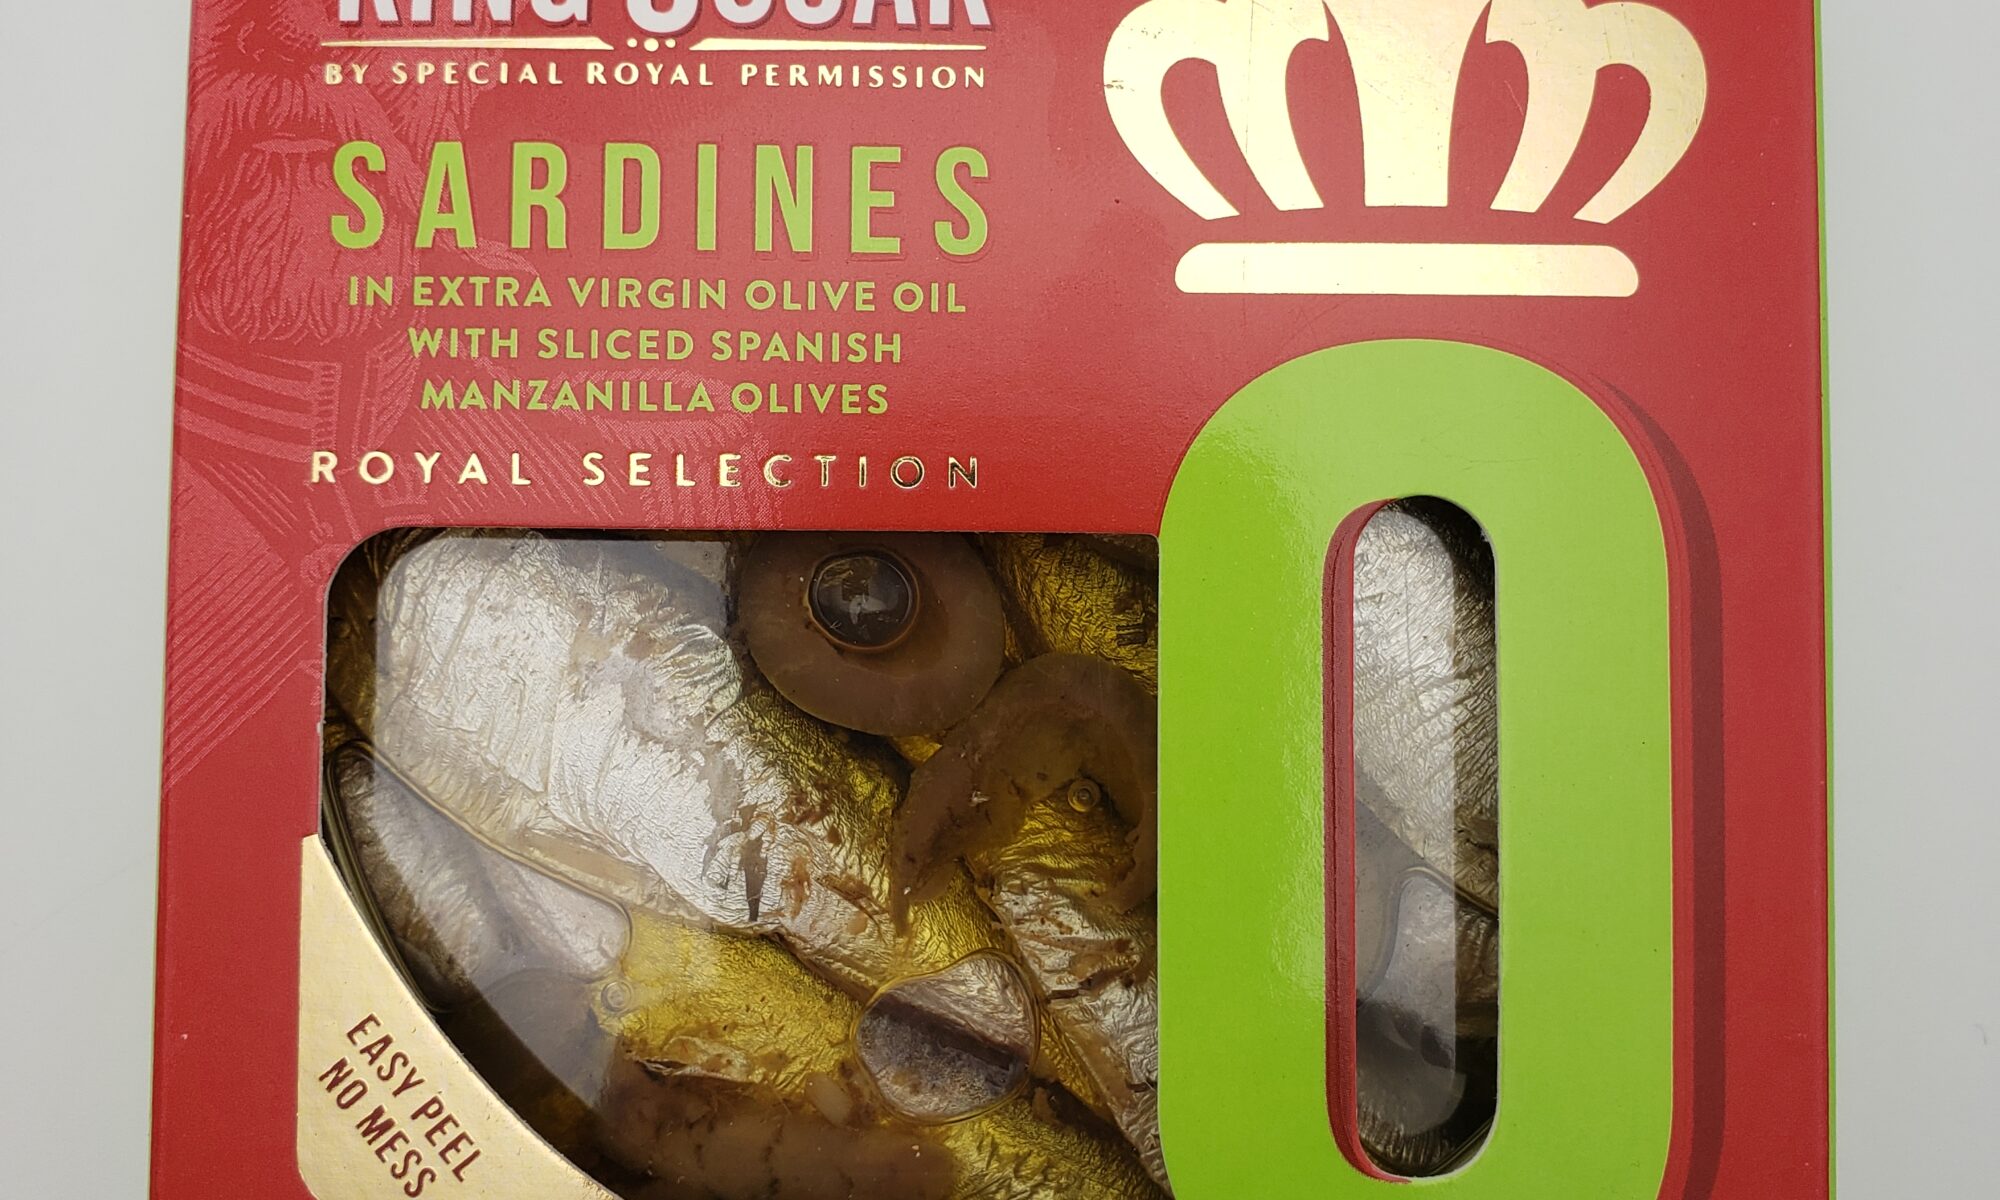 Image of King Oscar royal sardines with manzanilla olives